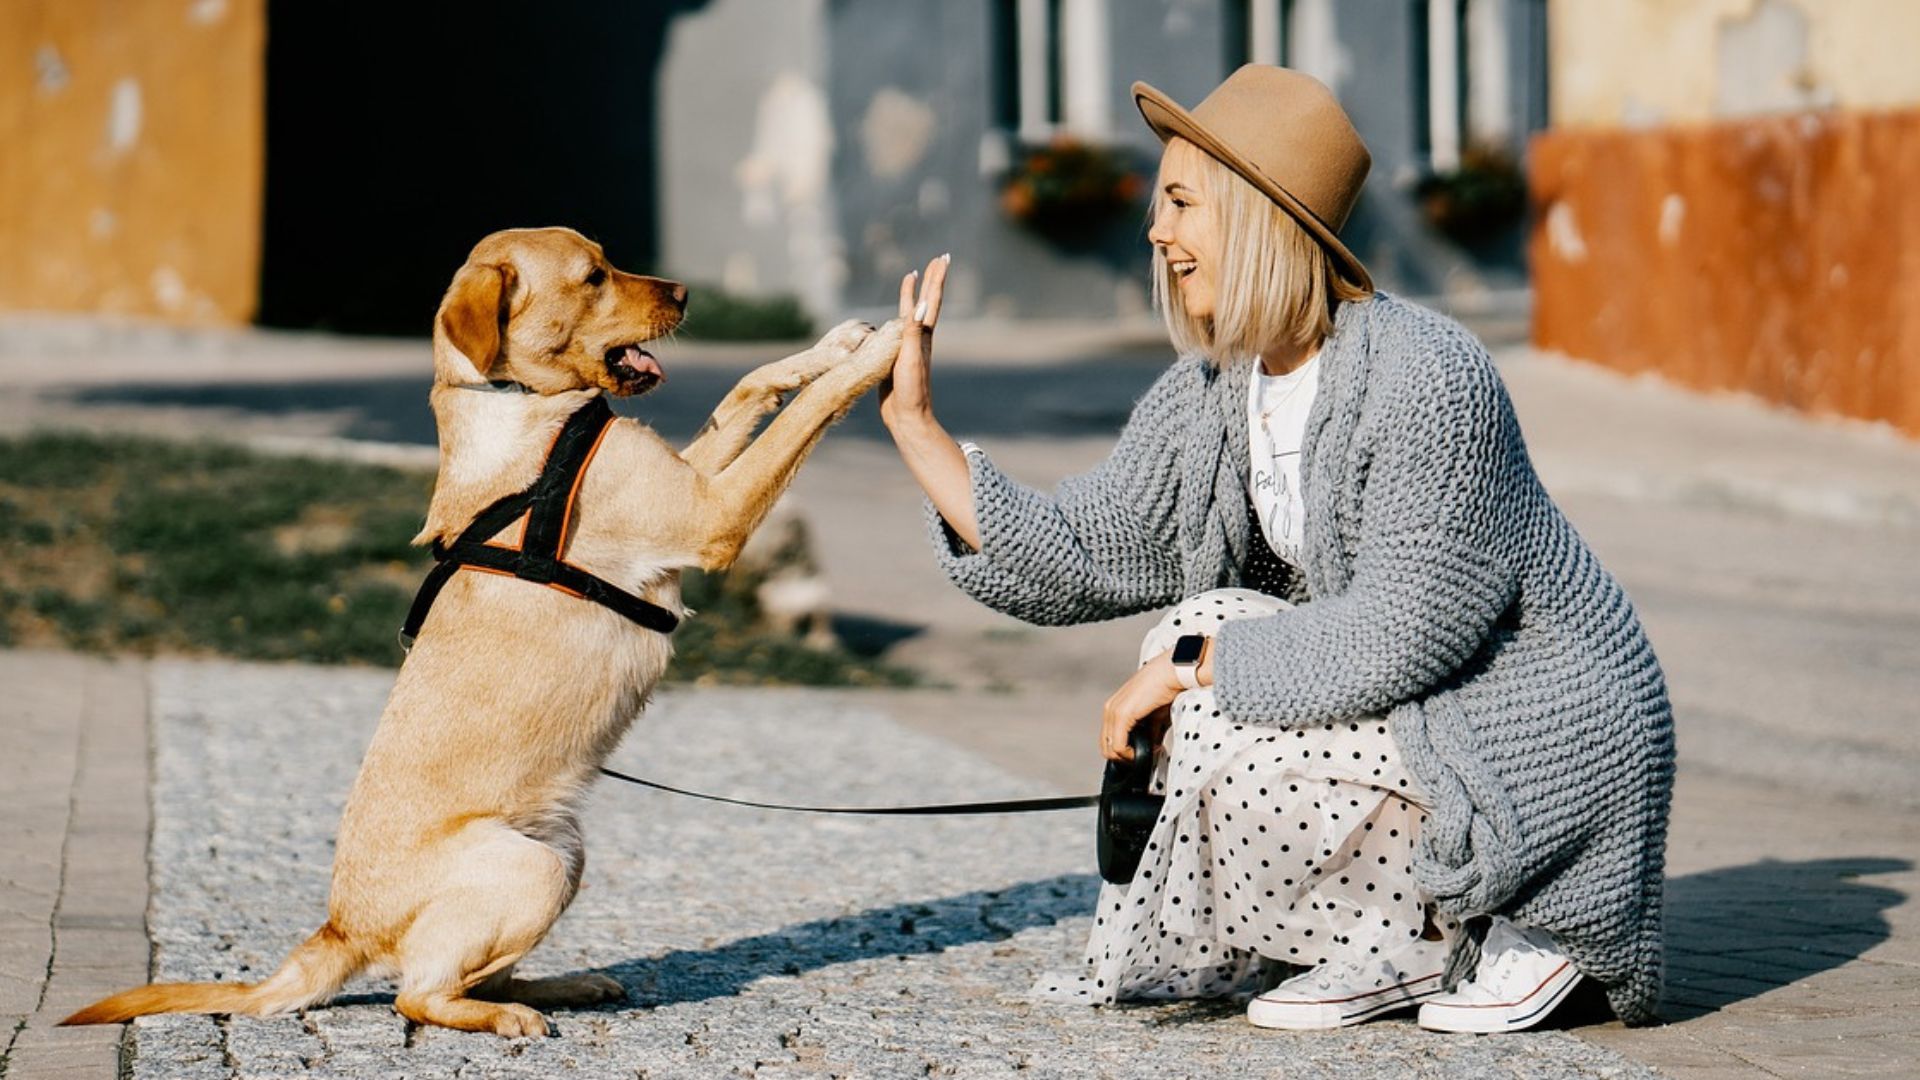 El estudio se enfocó en las emociones y reacciones de los centennials con sus perros cuando presentan ladridos descontrolados y comportamientos agresivos (Pixabay)